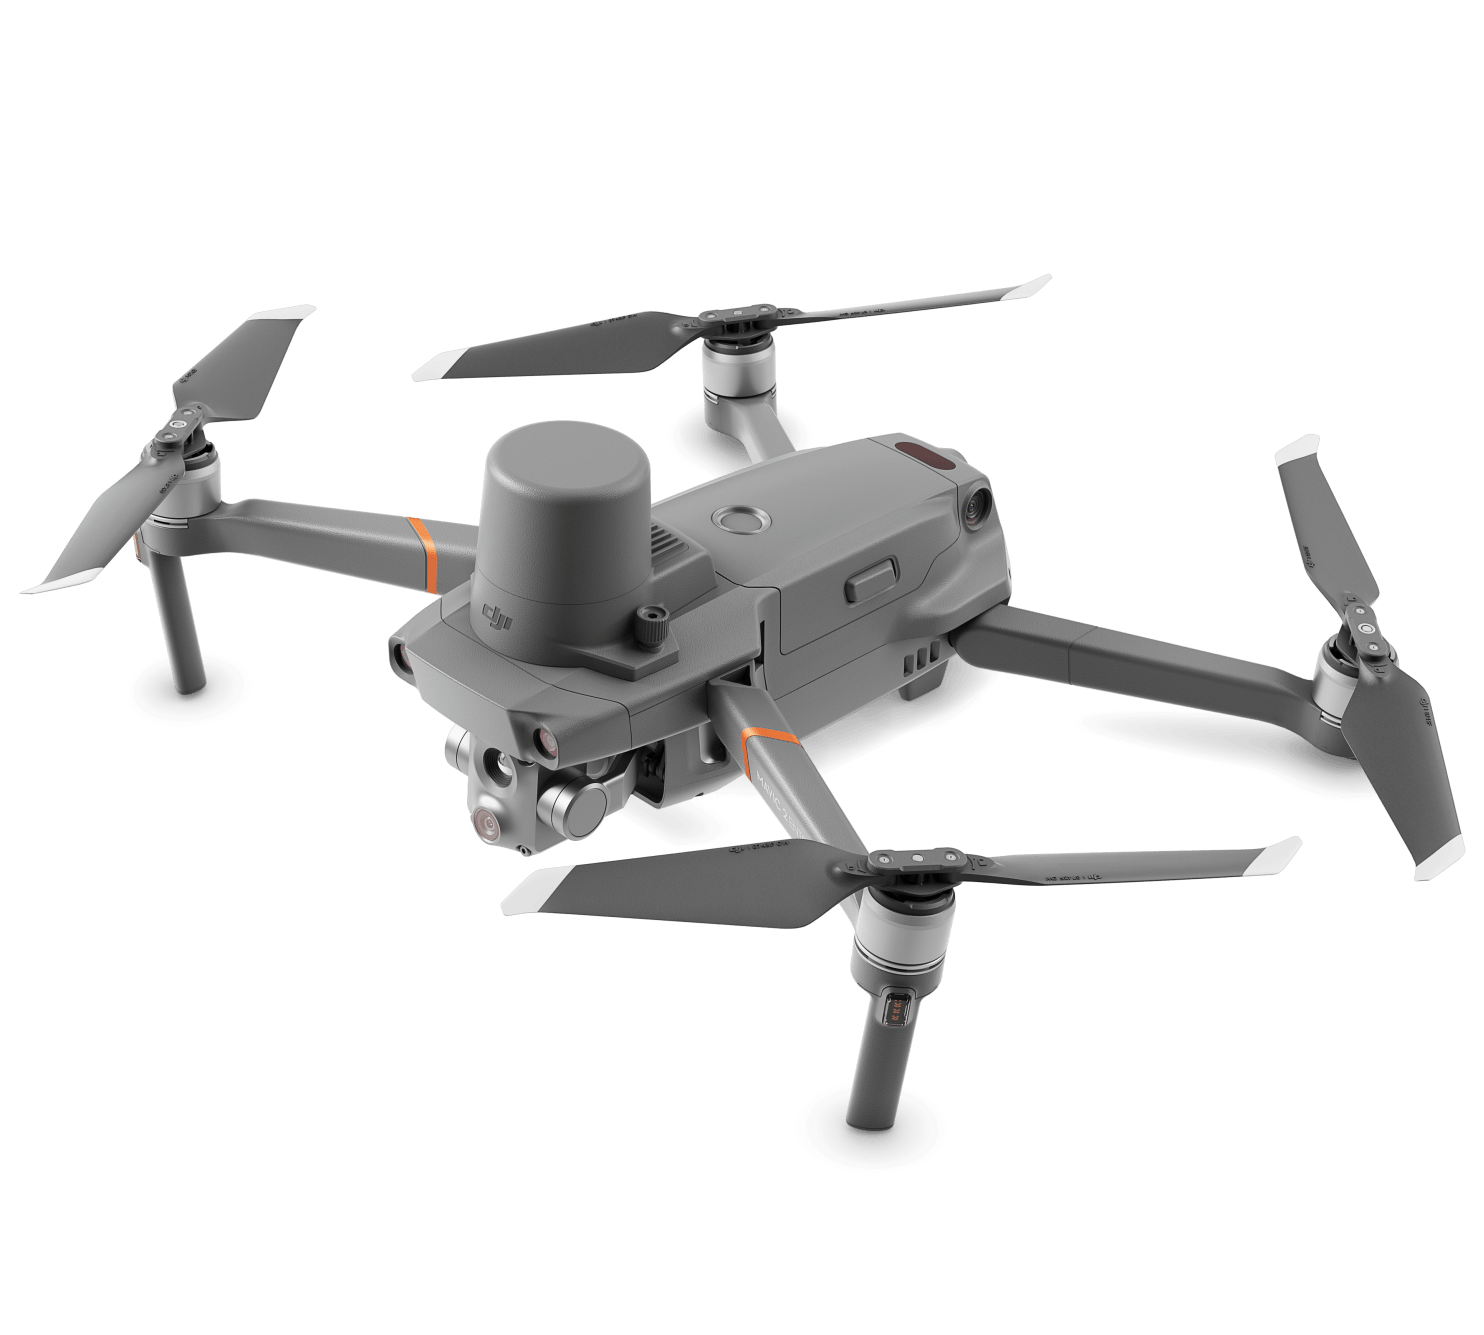 Drone especializado para búsqueda y rescate usando el sistema LiDAR